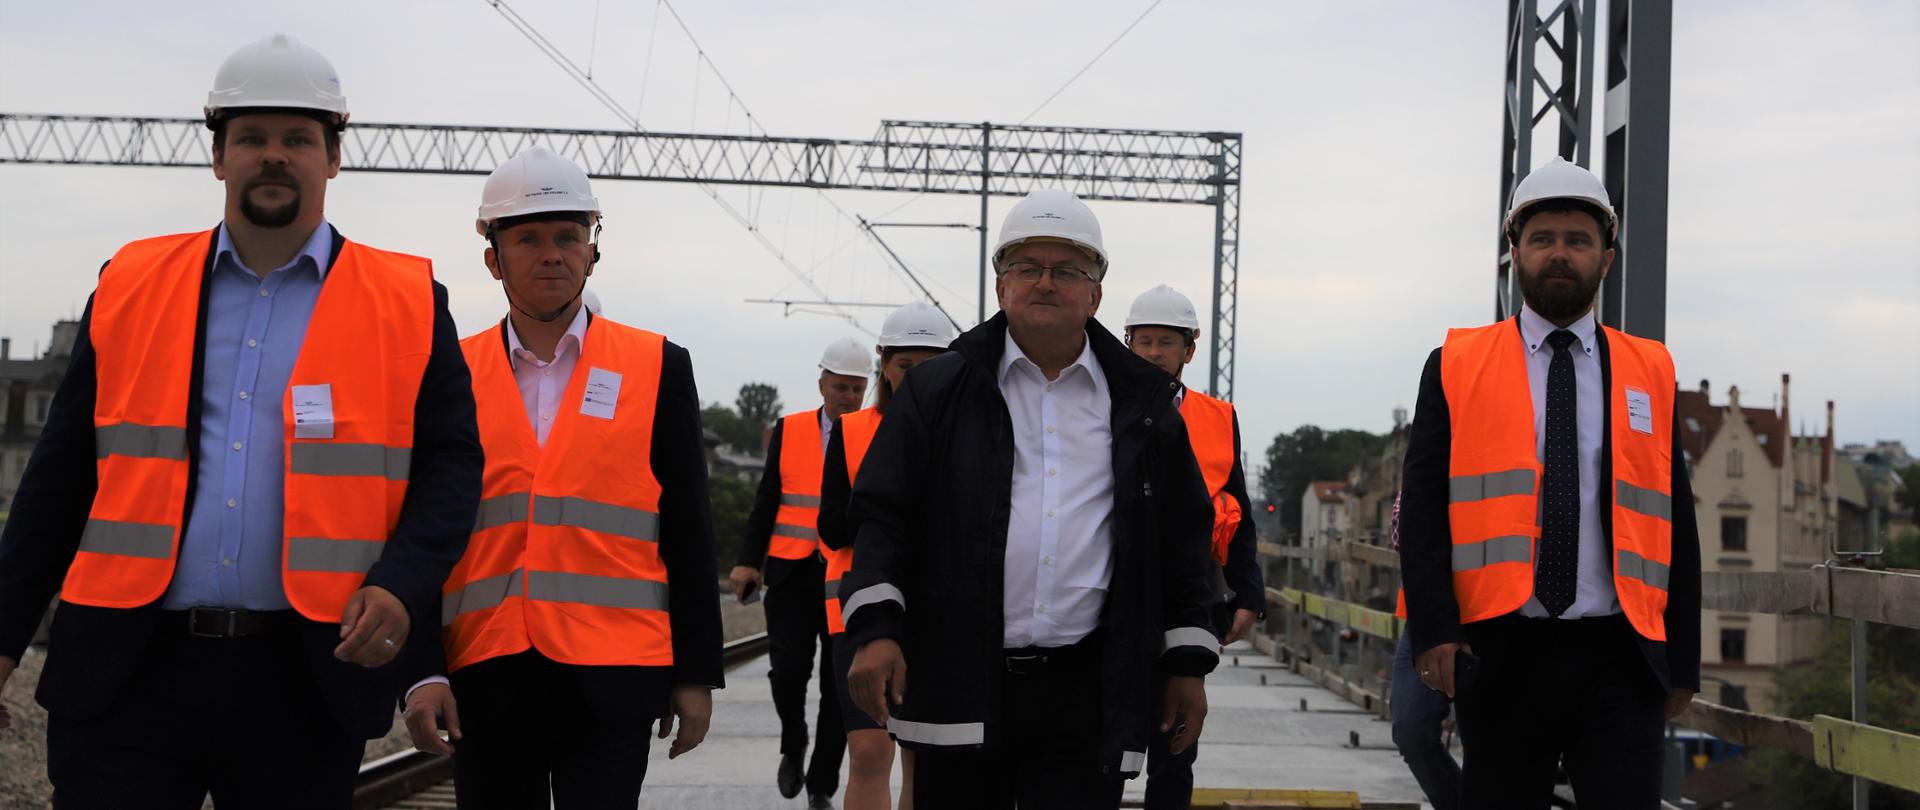 Minister infrastruktury Andrzej Adamczyk uczestniczył w konferencji prasowej podczas której podpisano porozumienie na zagospodarowanie terenu pod estakadami kolejowymi w Krakowie